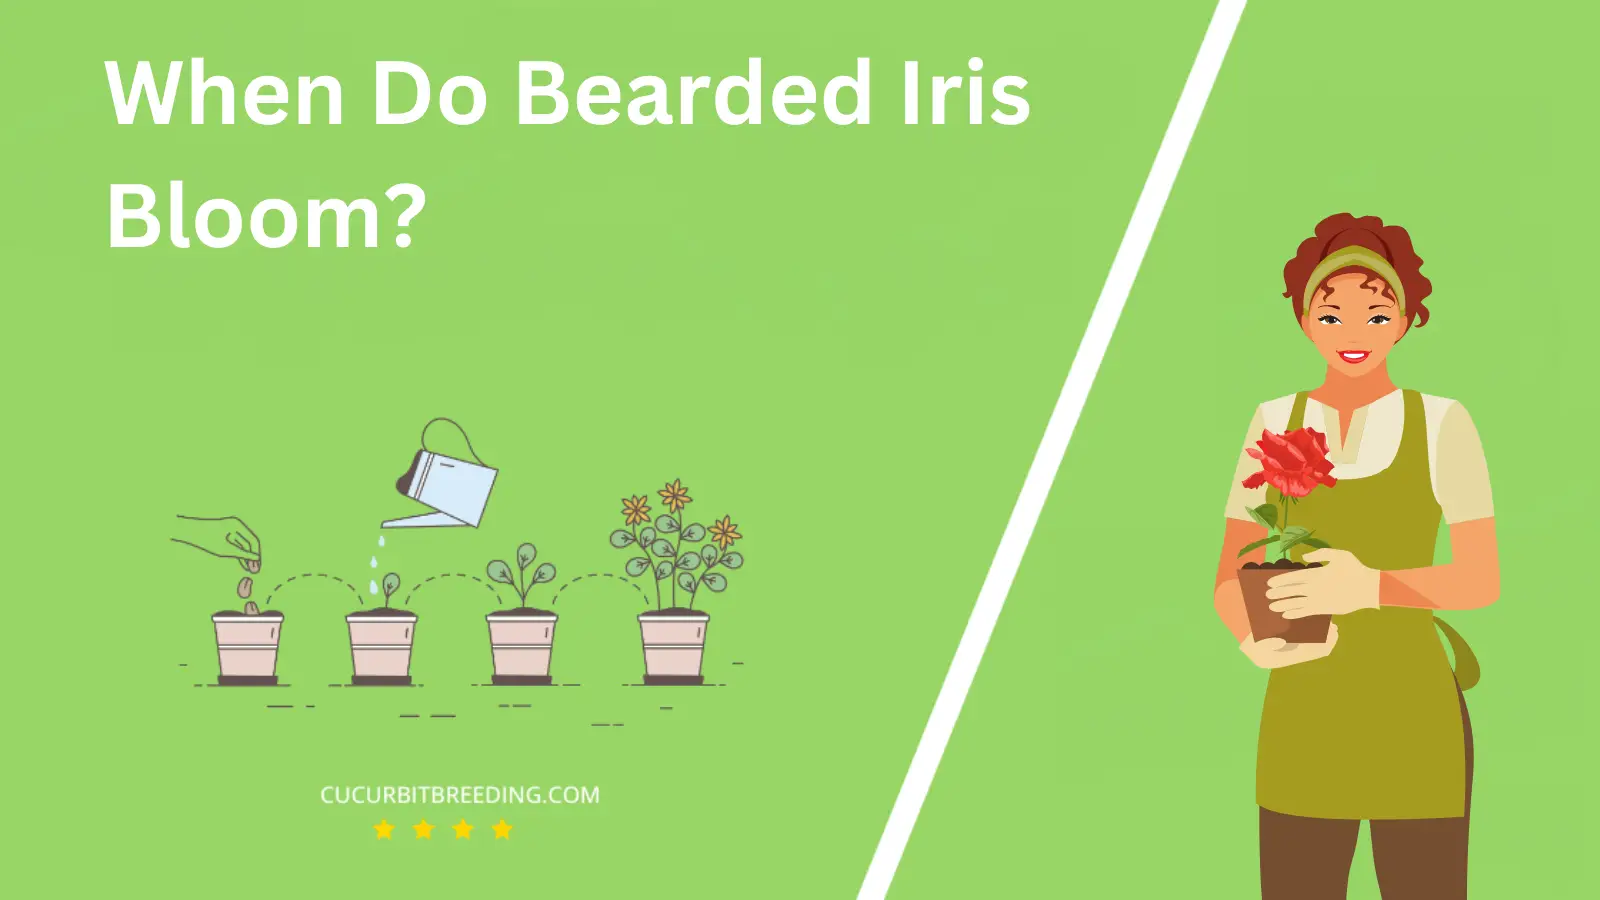 When Do Bearded Iris Bloom?